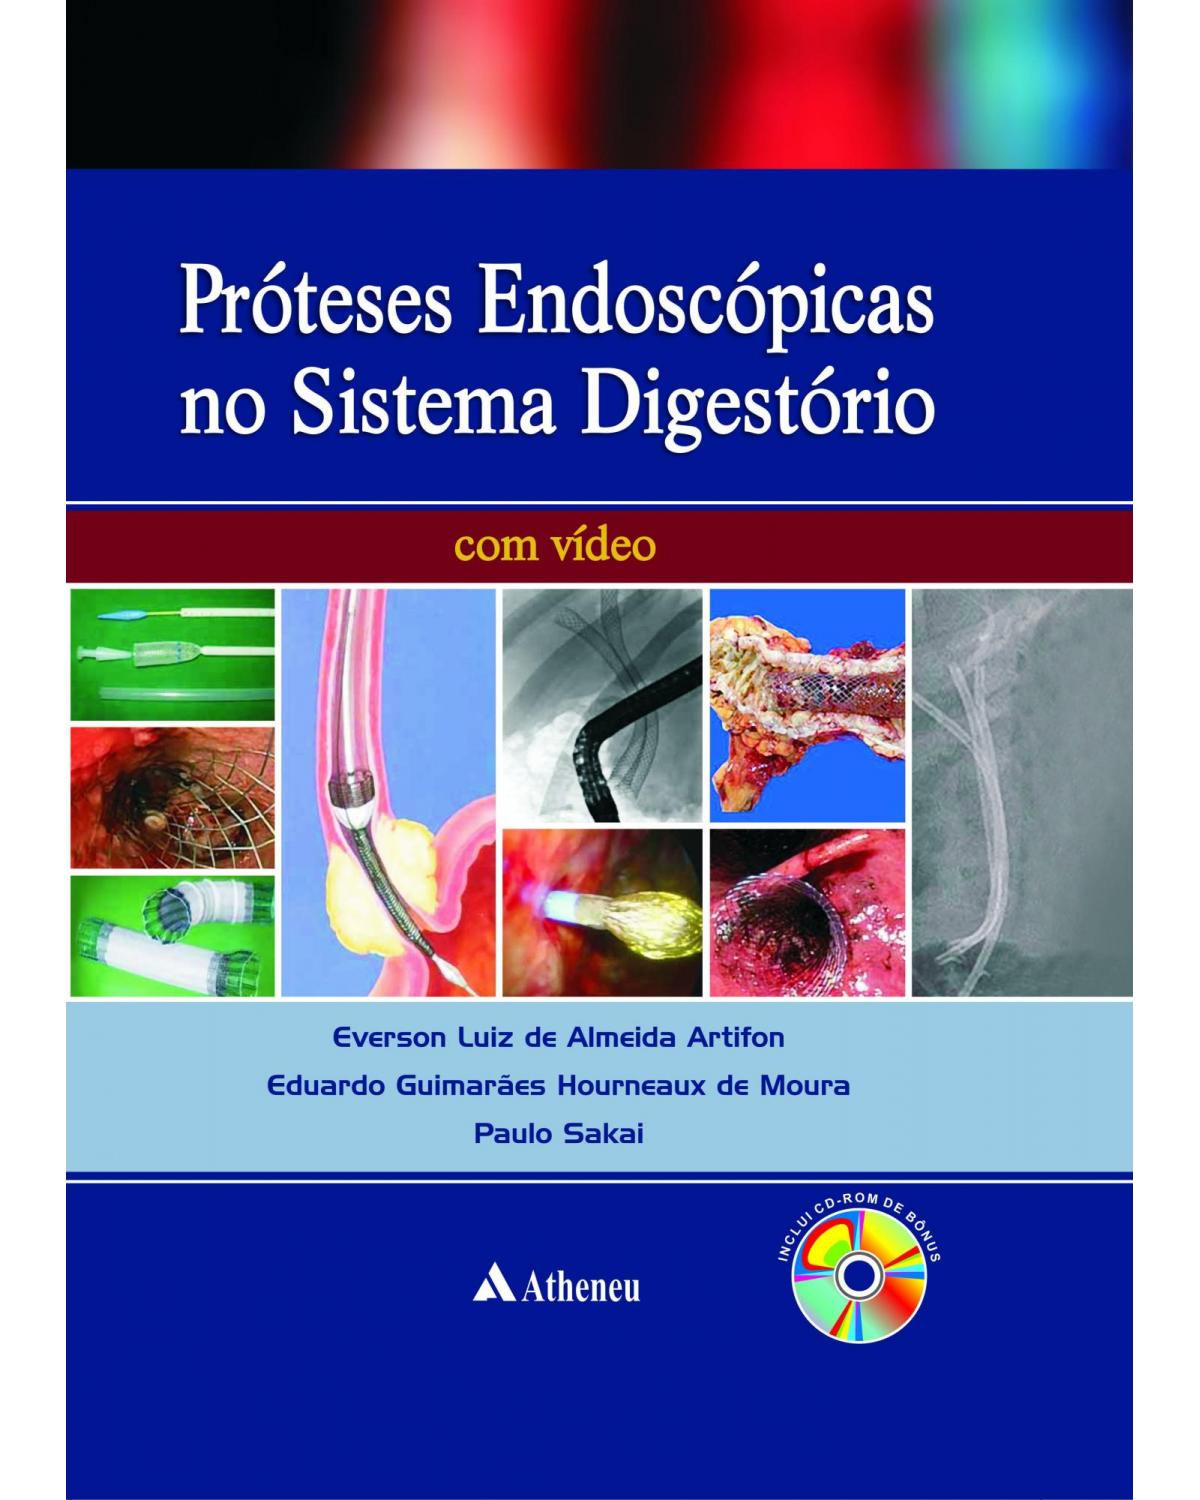 Próteses endoscópicas do aparelho digestório - 1ª Edição | 2012